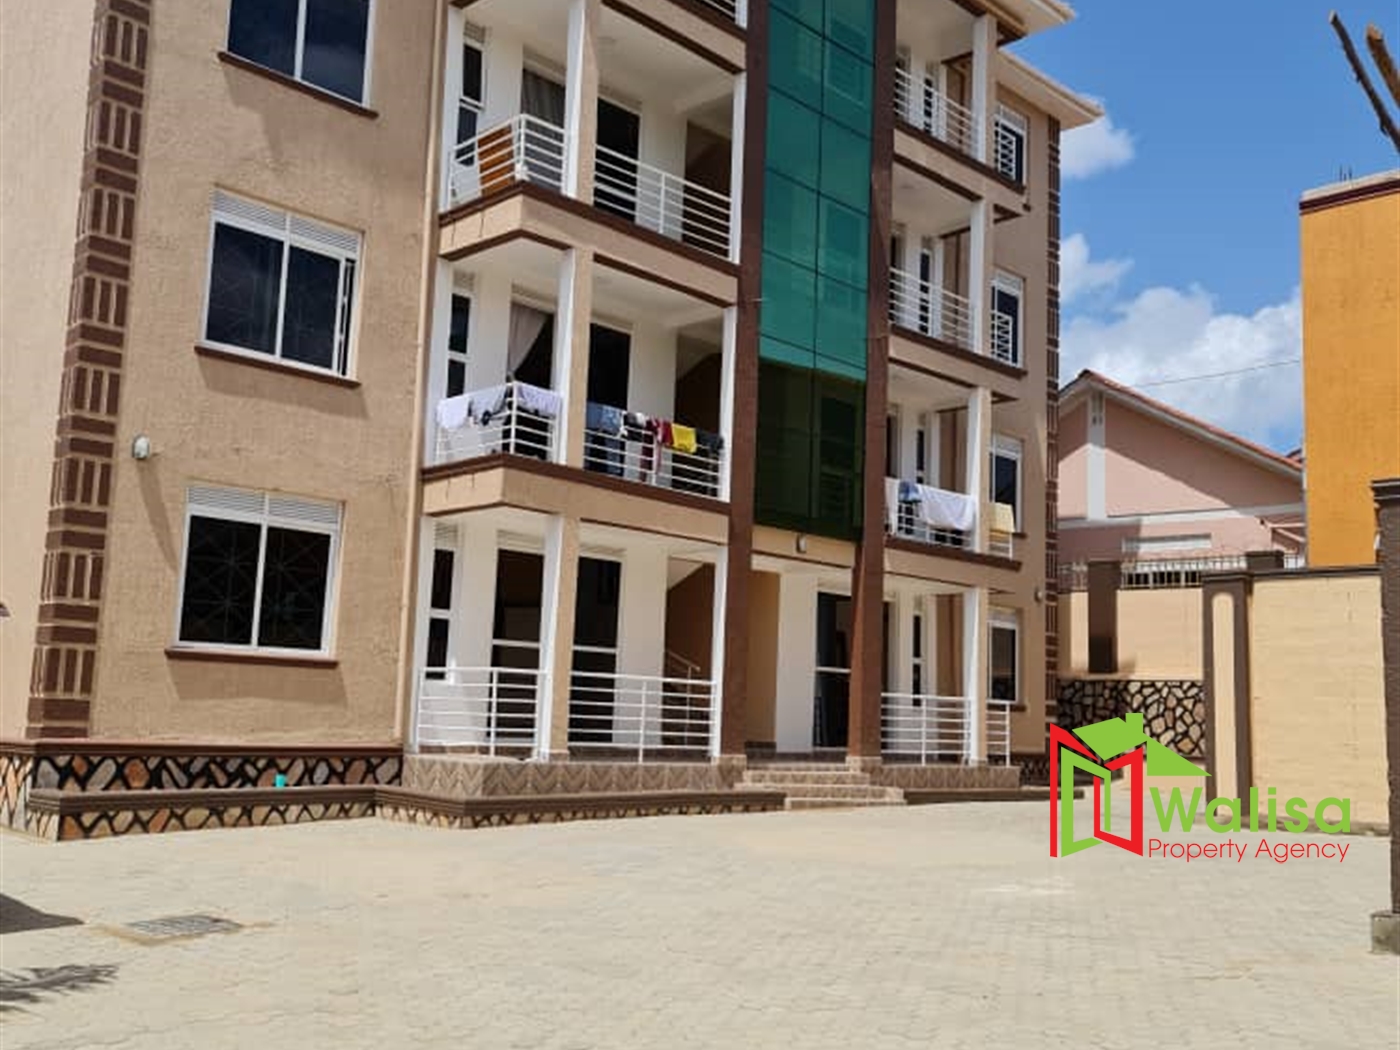 Apartment block for sale in Bbunga Kampala